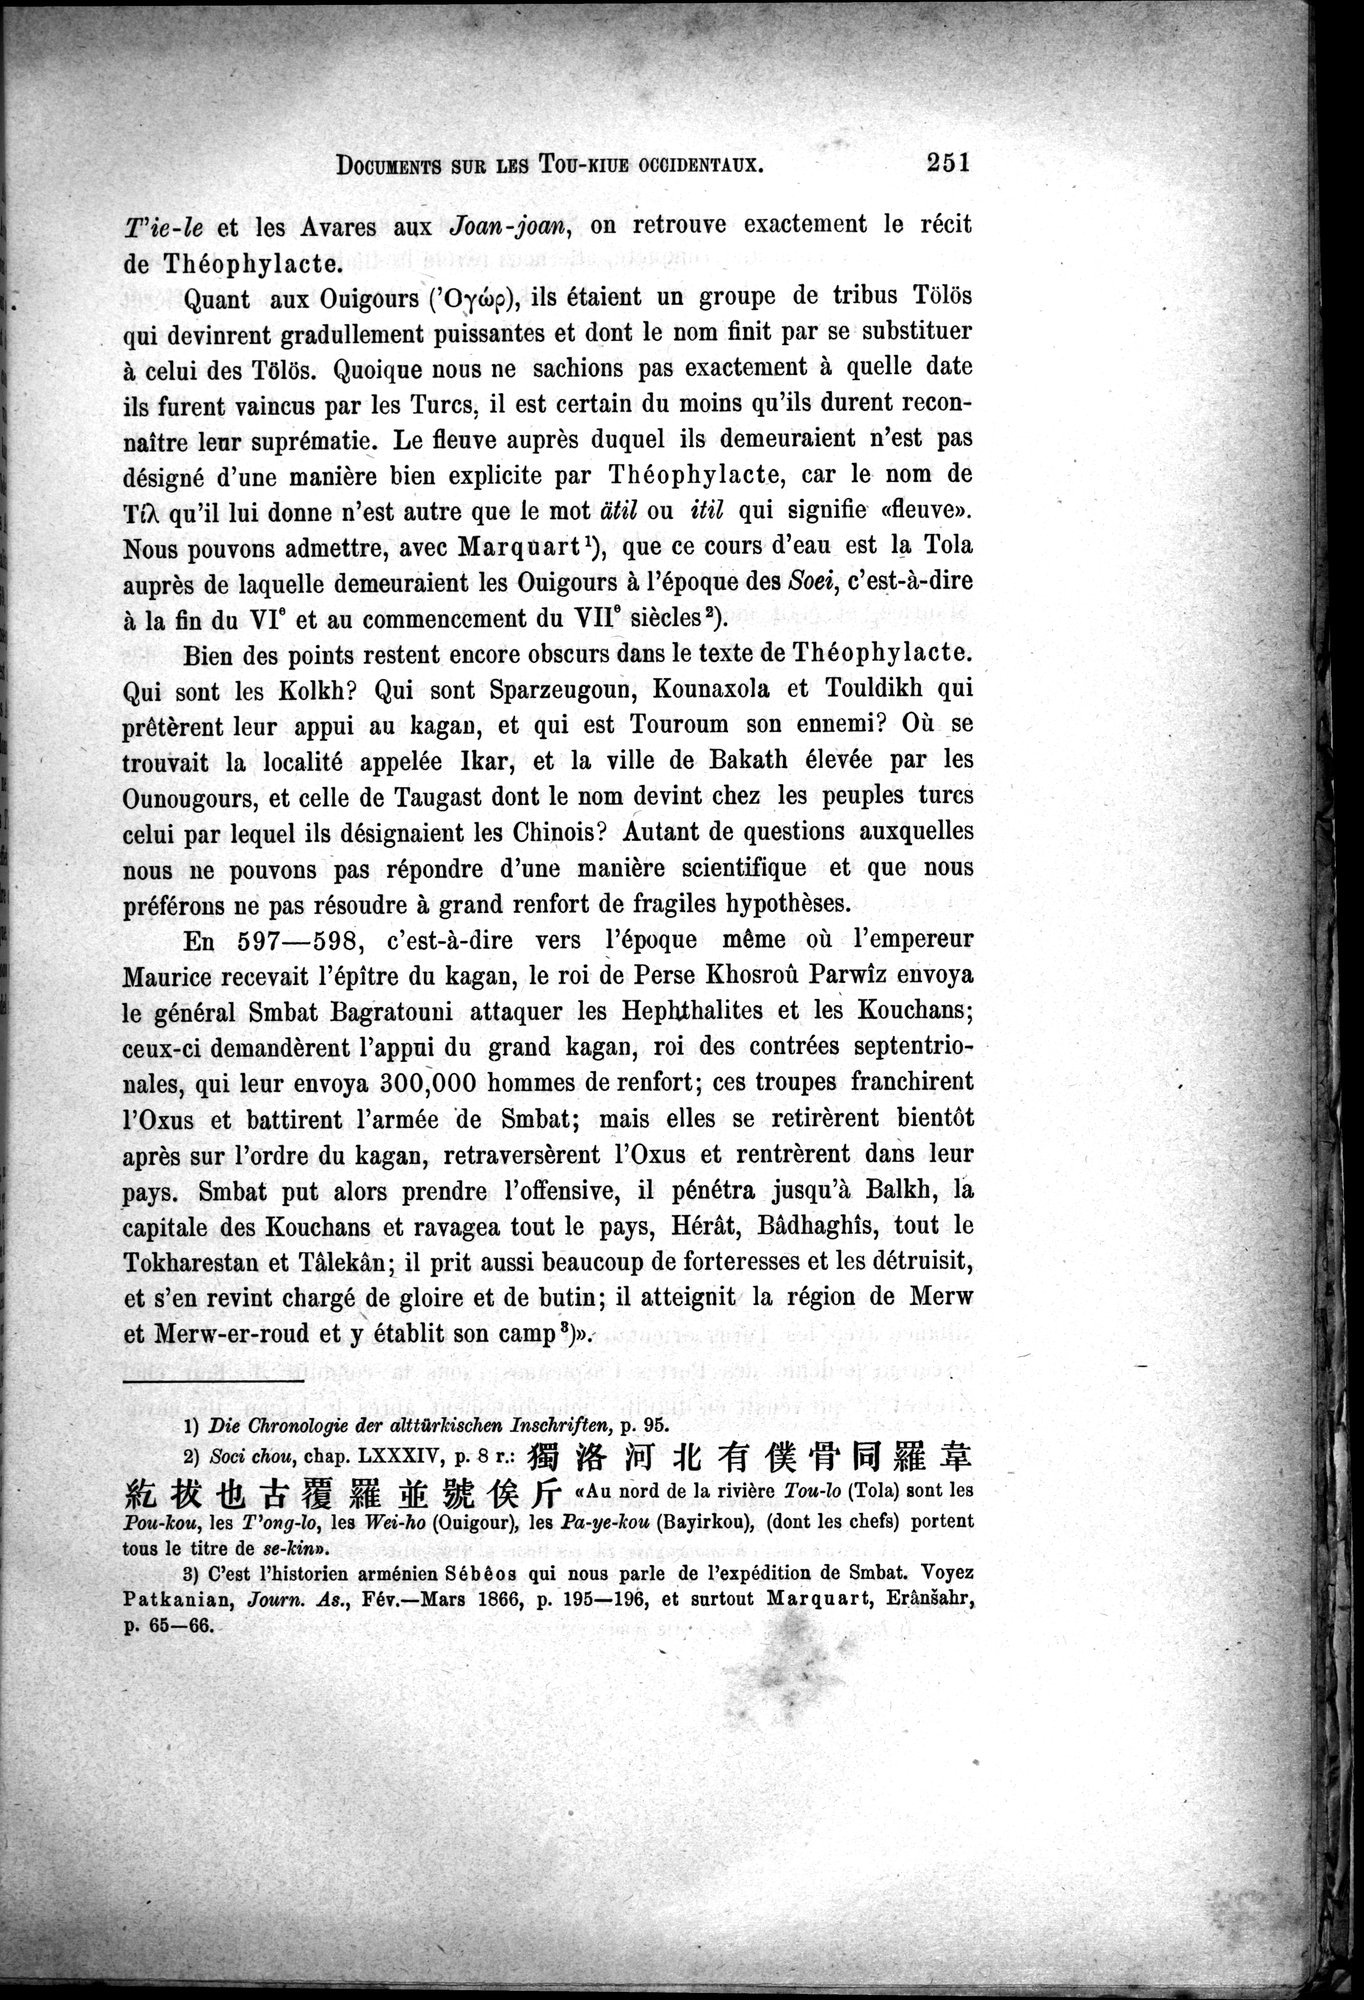 Documents sur les Tou-kiue (Turcs) occidentaux : vol.1 / Page 261 (Grayscale High Resolution Image)